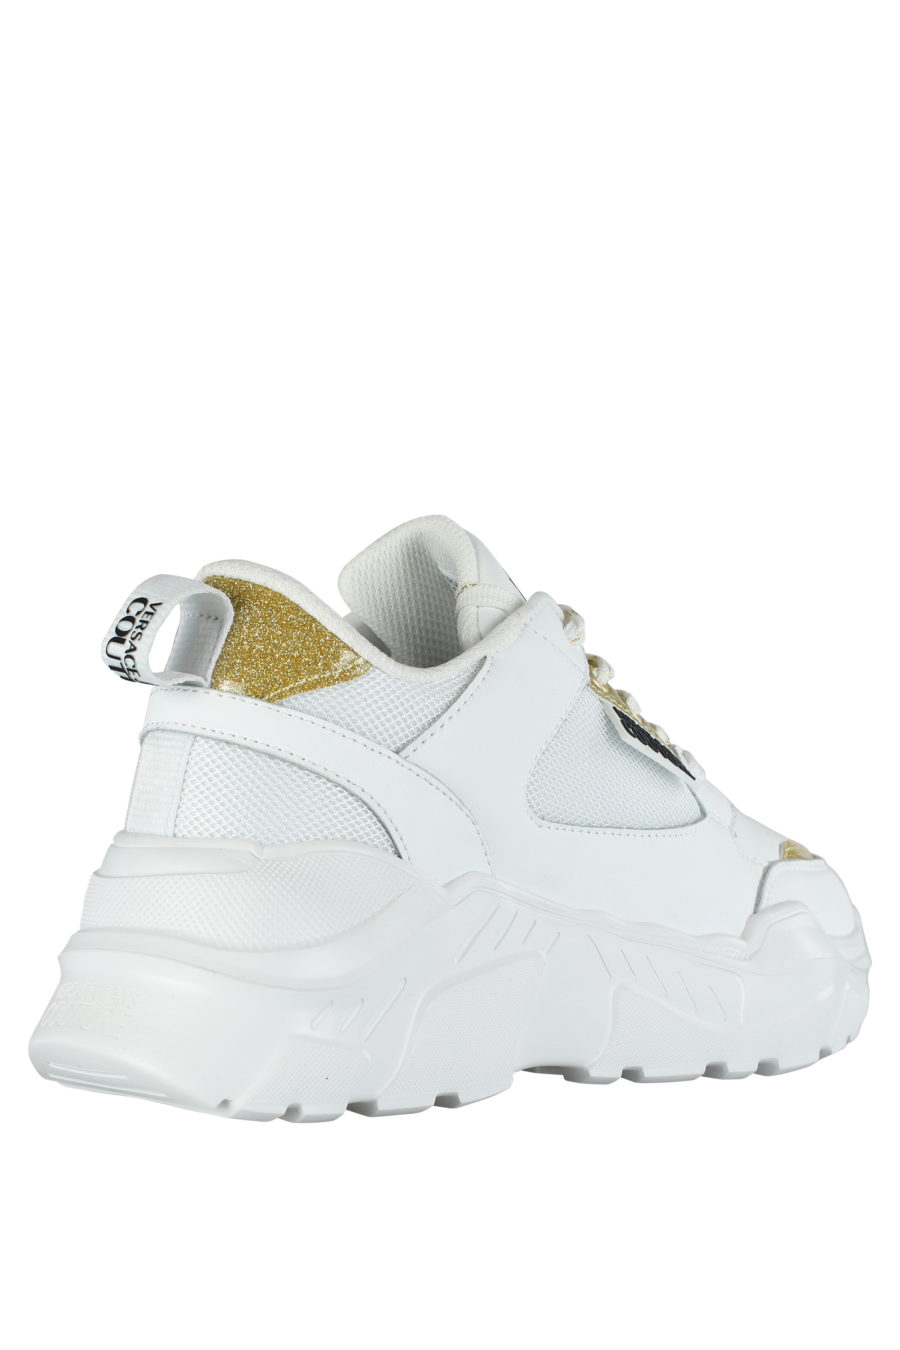 Zapatillas blancas con detalles dorado "glitter" - IMG 5282